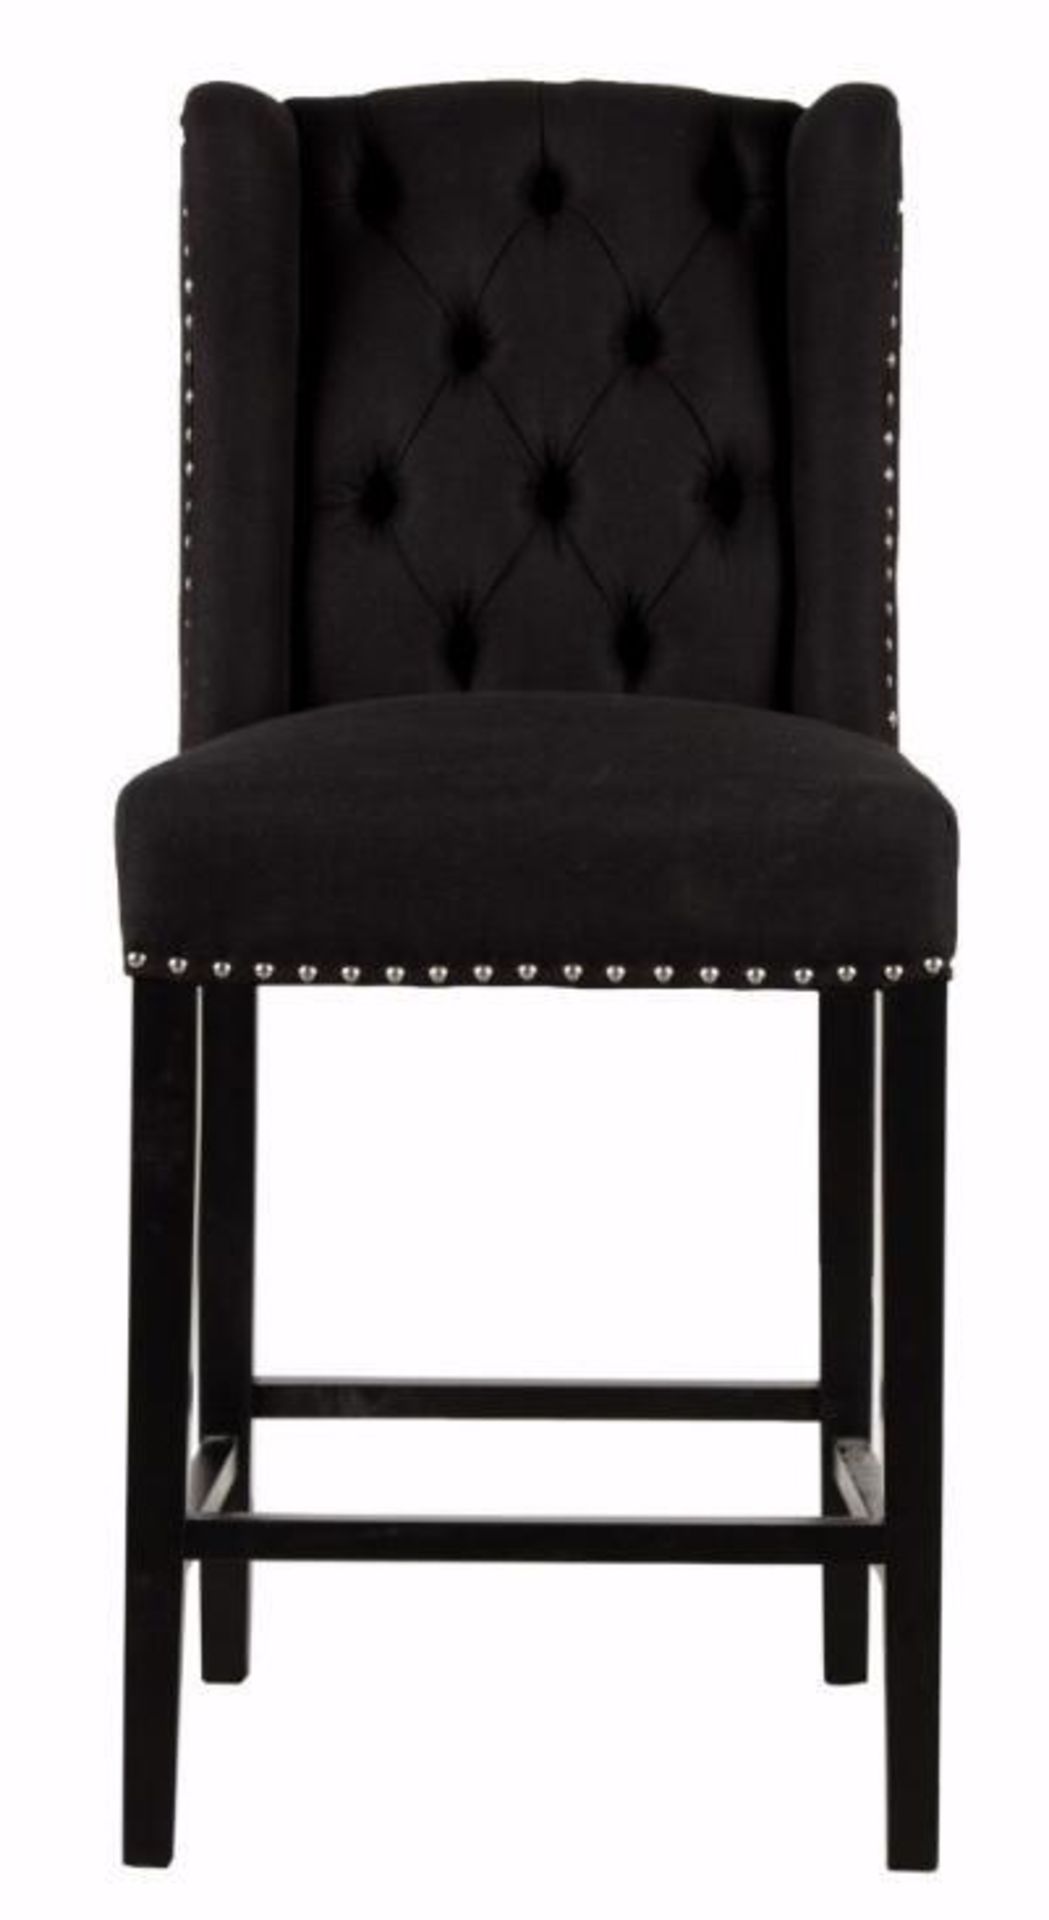 2 x HOUSE OF SPARKLES Luxury Wing Back Bar Stools Richly Upholstered In Black Velvet - Brand New - Image 3 of 8